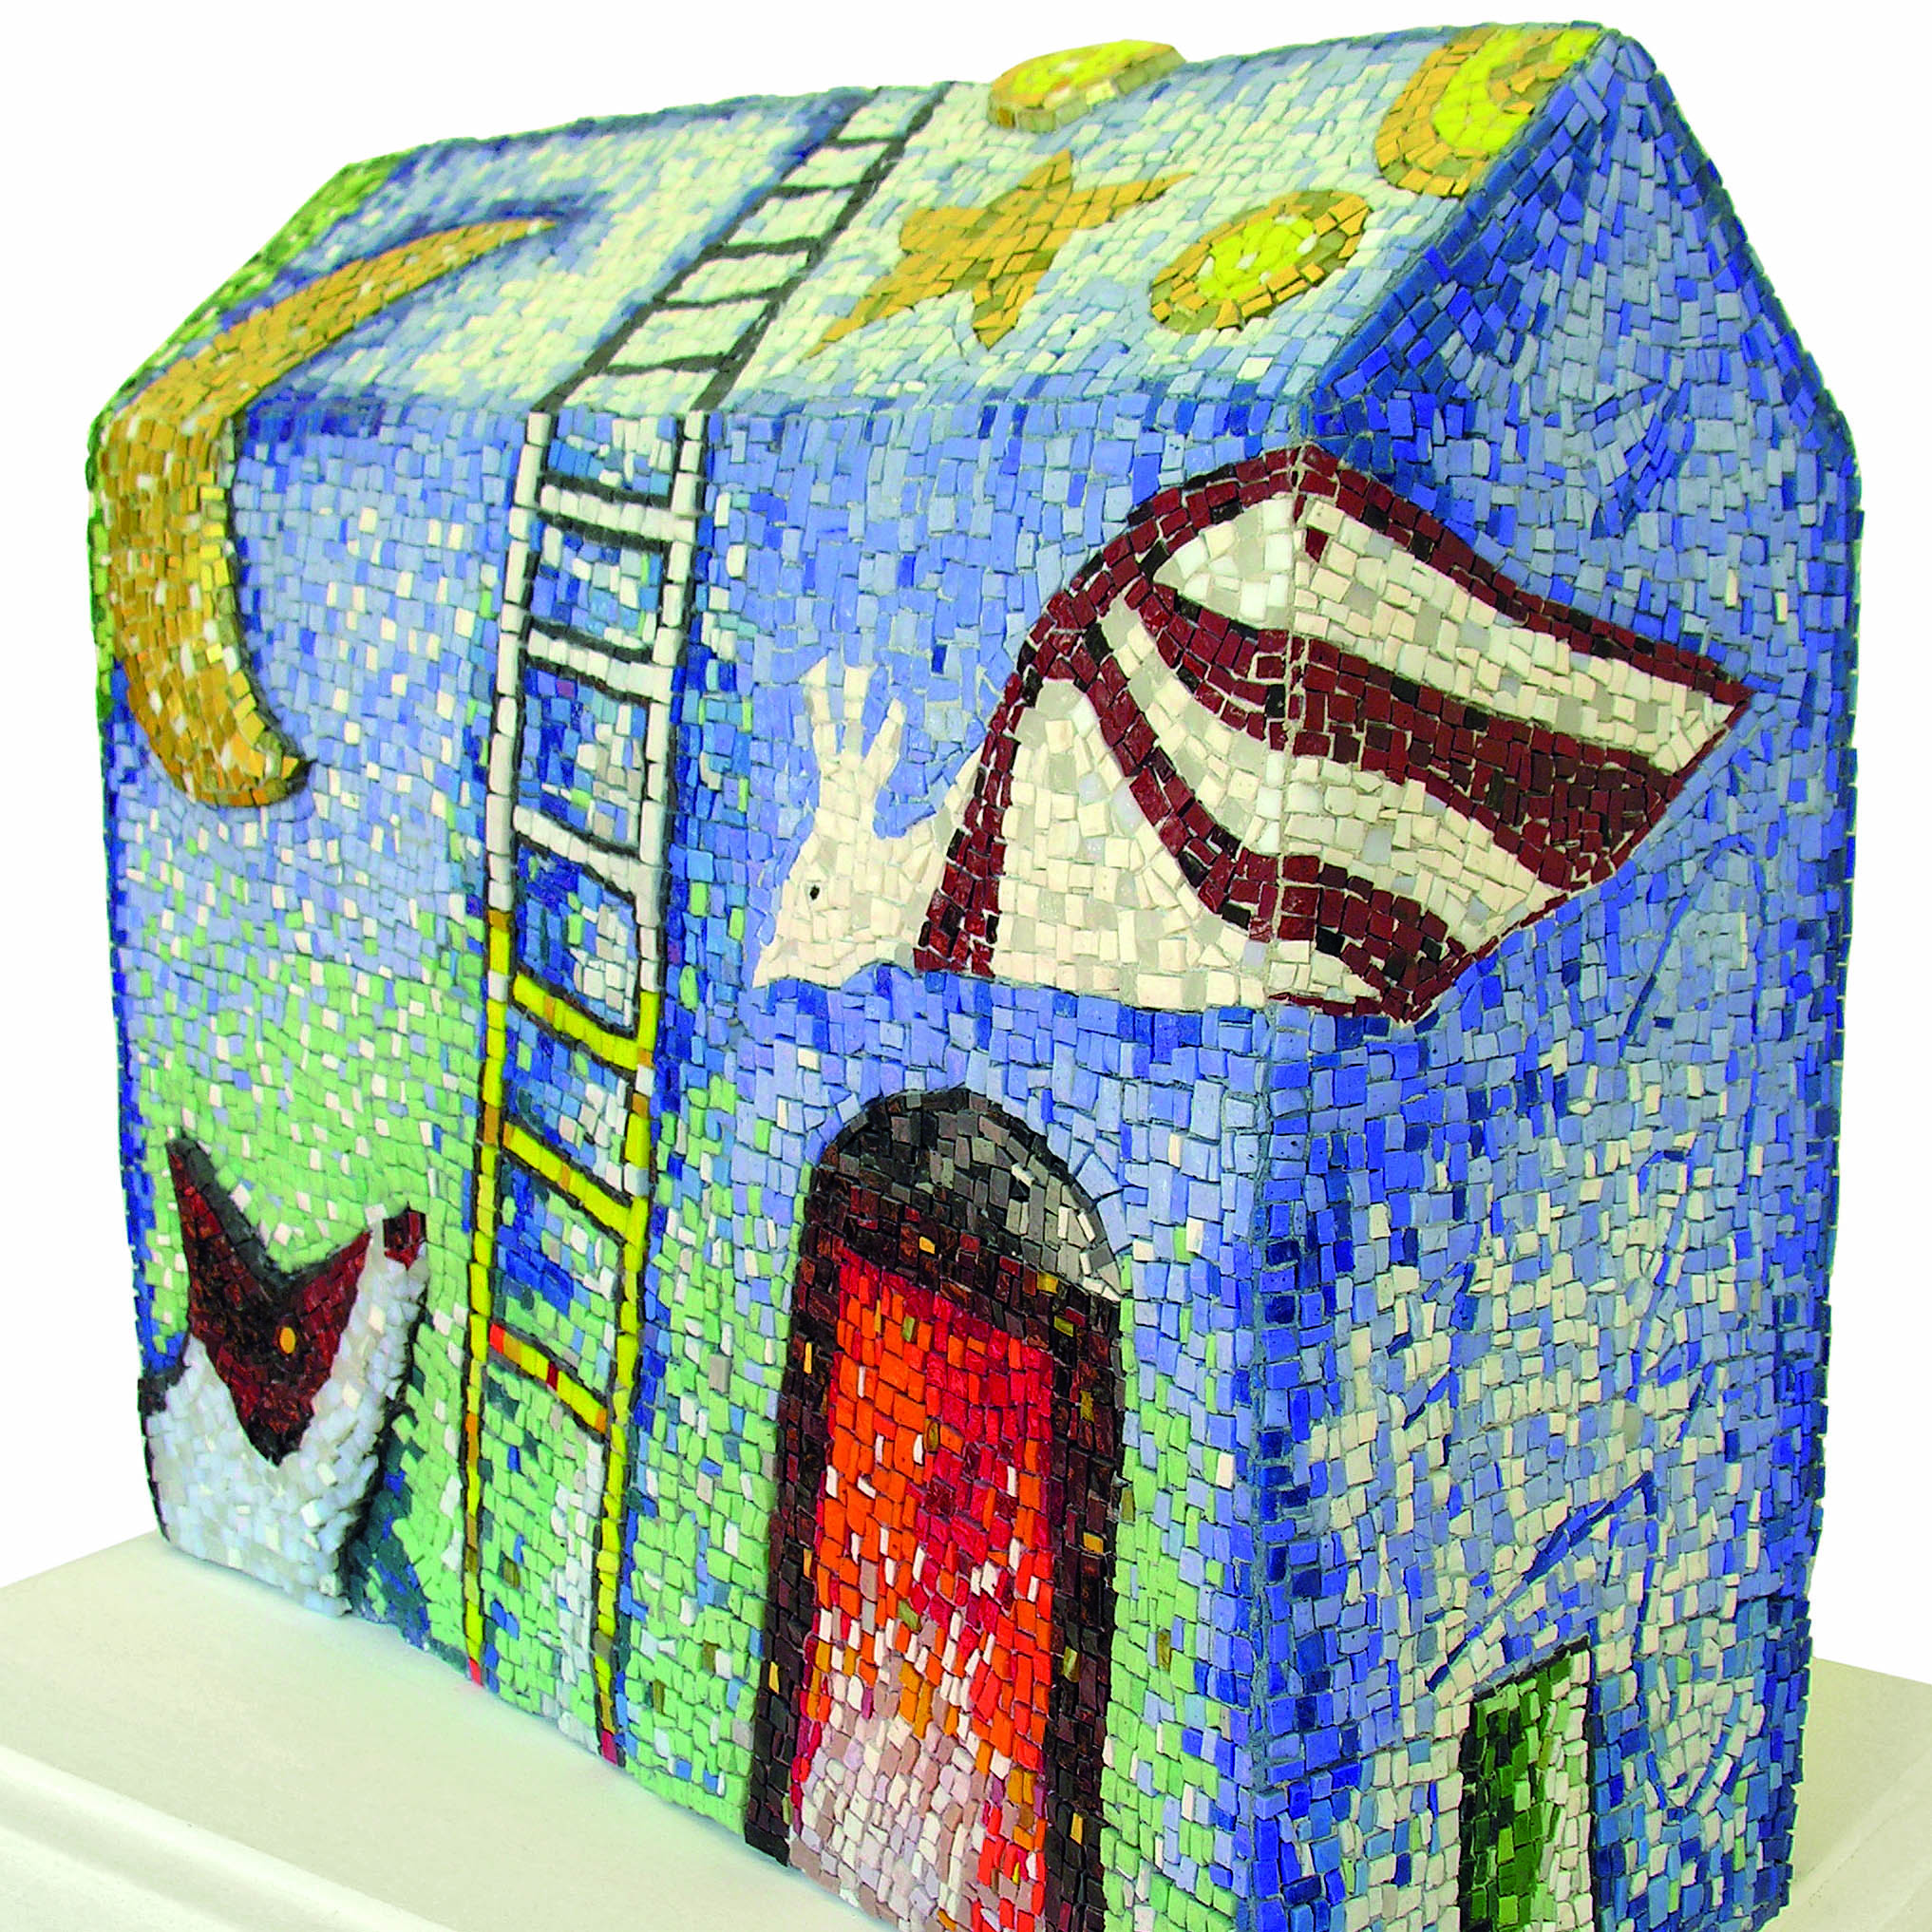 Giosetta Fioroni, Scuola del Mosaico dell’Accademia di Belle Arti di Ravenna, La casa di Giosetta, 2002, scultura musiva tessellata paste vitree, smalti, vetro a foglia metallica oro, su pannelli di legno assemblati, 63 x 68 x 27 cm, Ravenna, MAR -Museo d’Arte della città di Ravenna